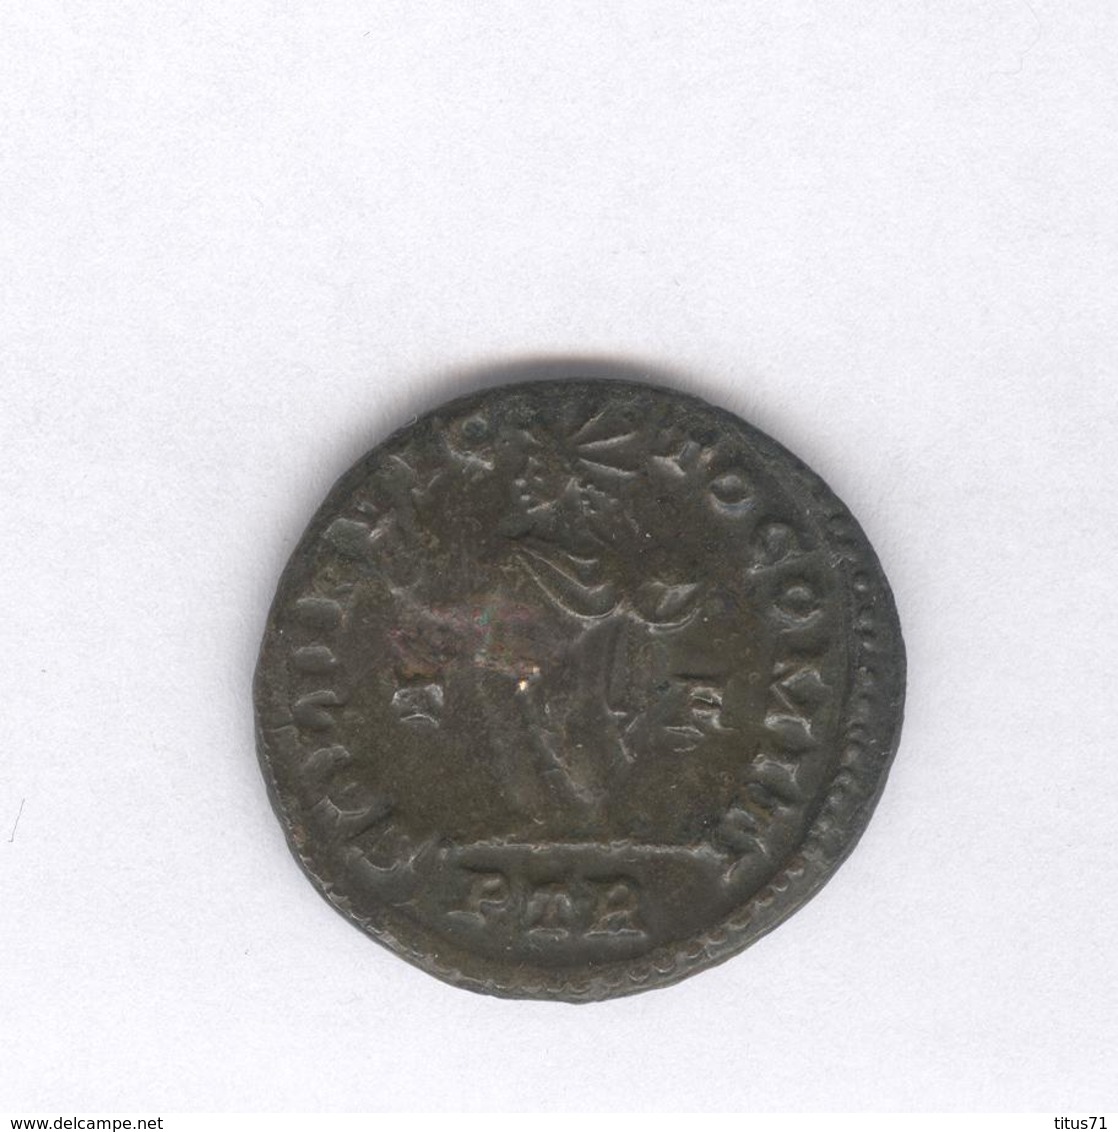 Follis Constantin - Soli Invicto Comiti - 309-310 - Monnaie Rome Antique - Lot 21 - L'Empire Chrétien (307 à 363)